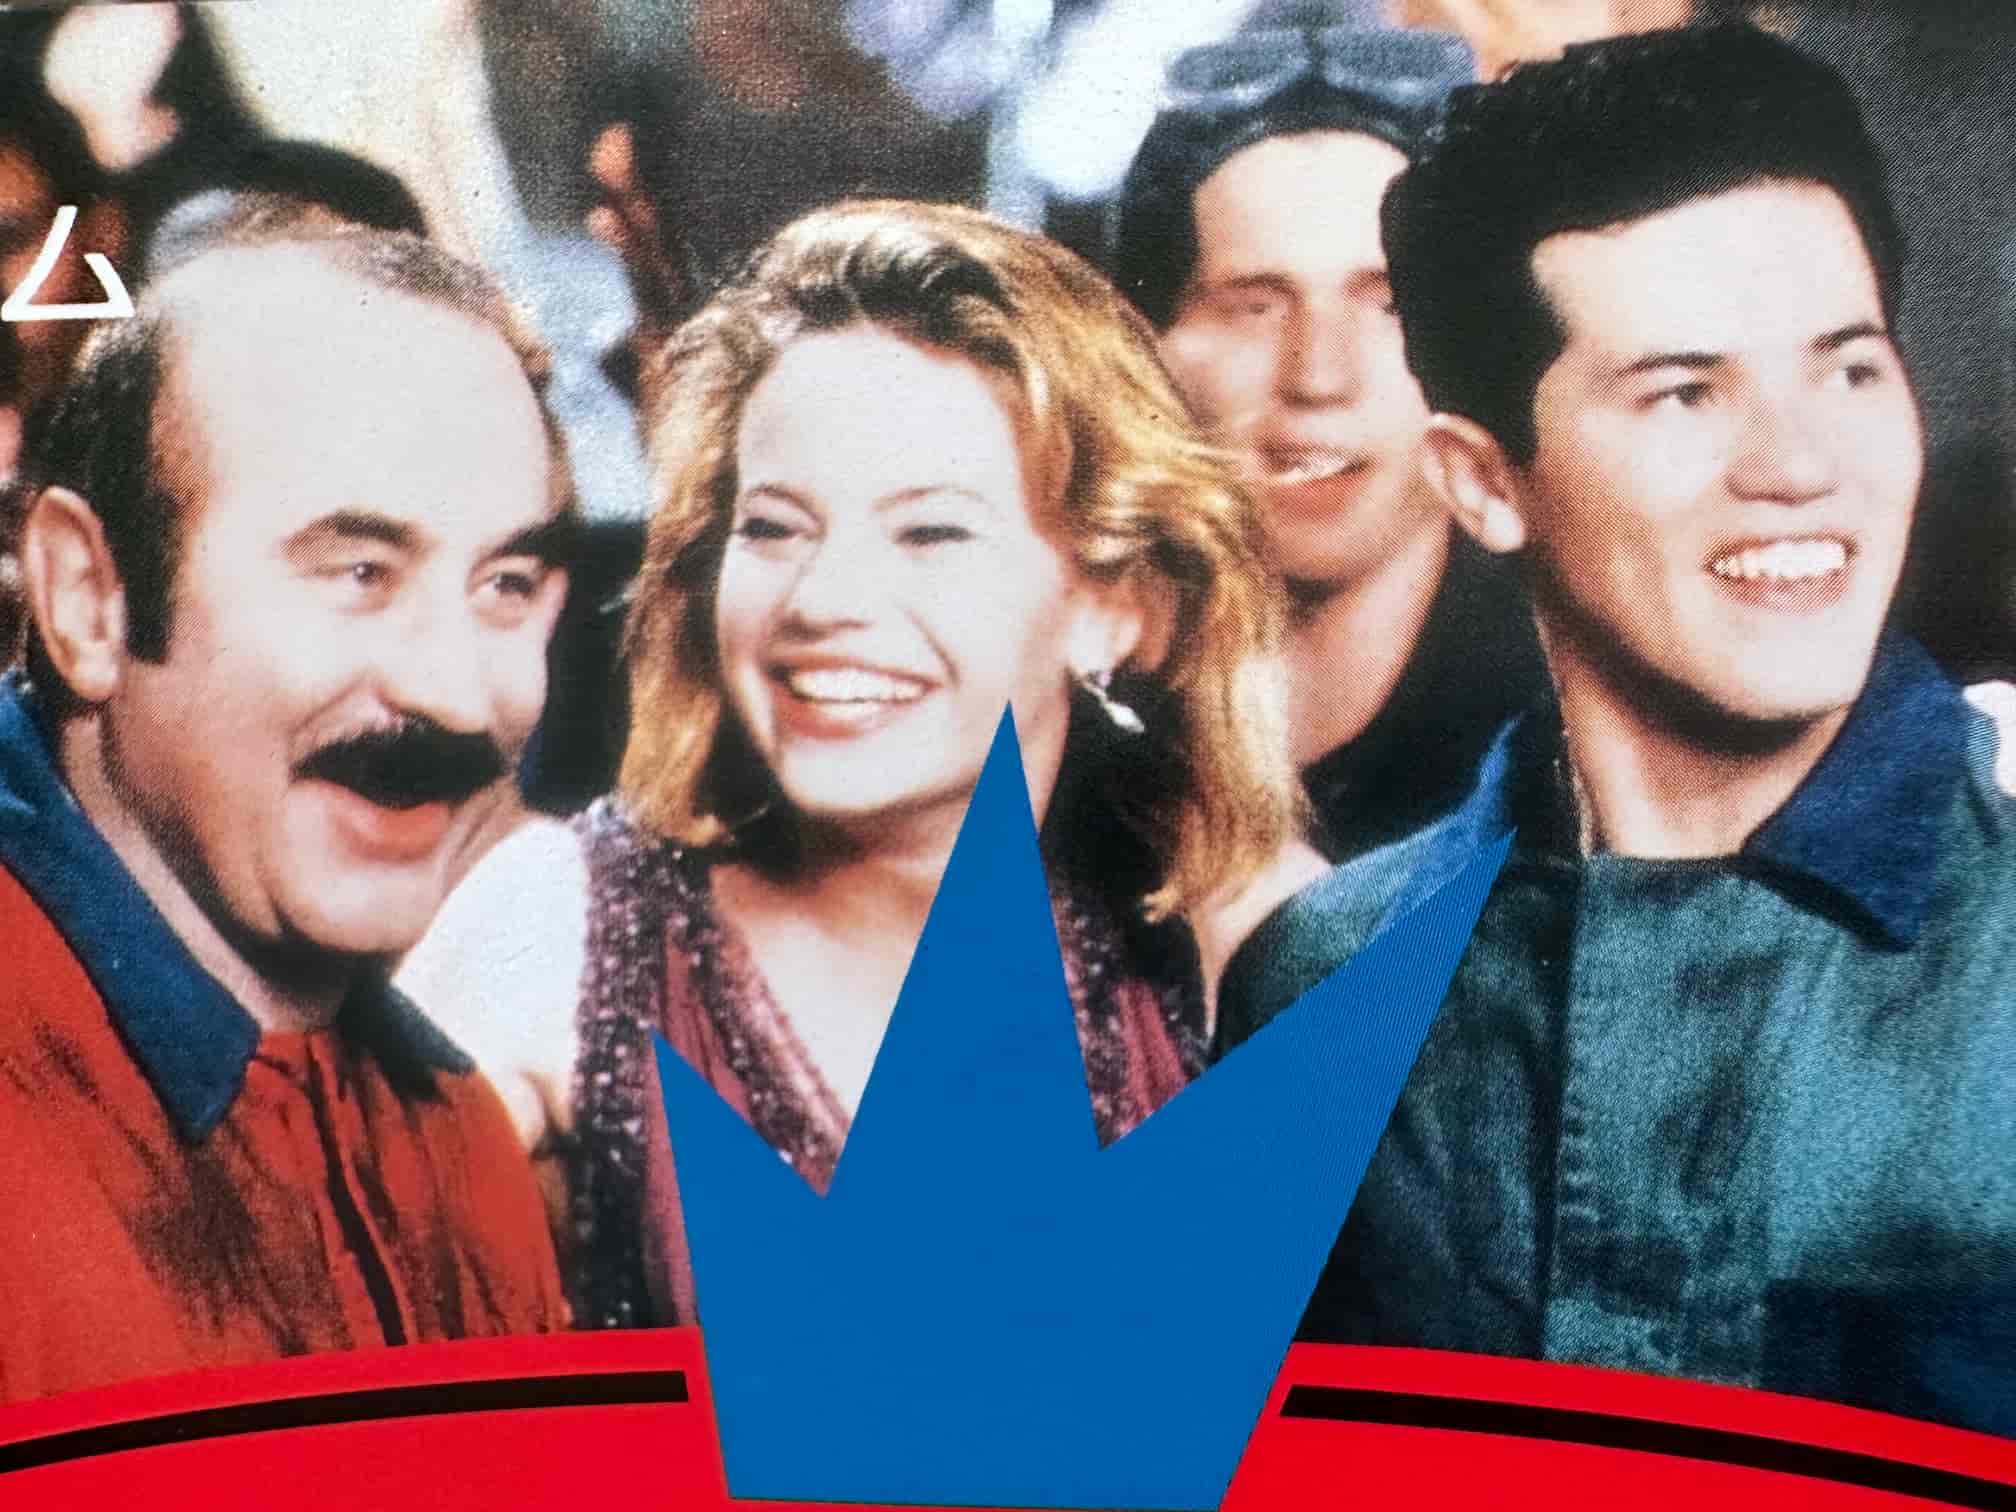 A photo featuring Bob Hoskins as Mario, John Leguizamo as Luigi, and Samantha Mathis as Princess Daisy.